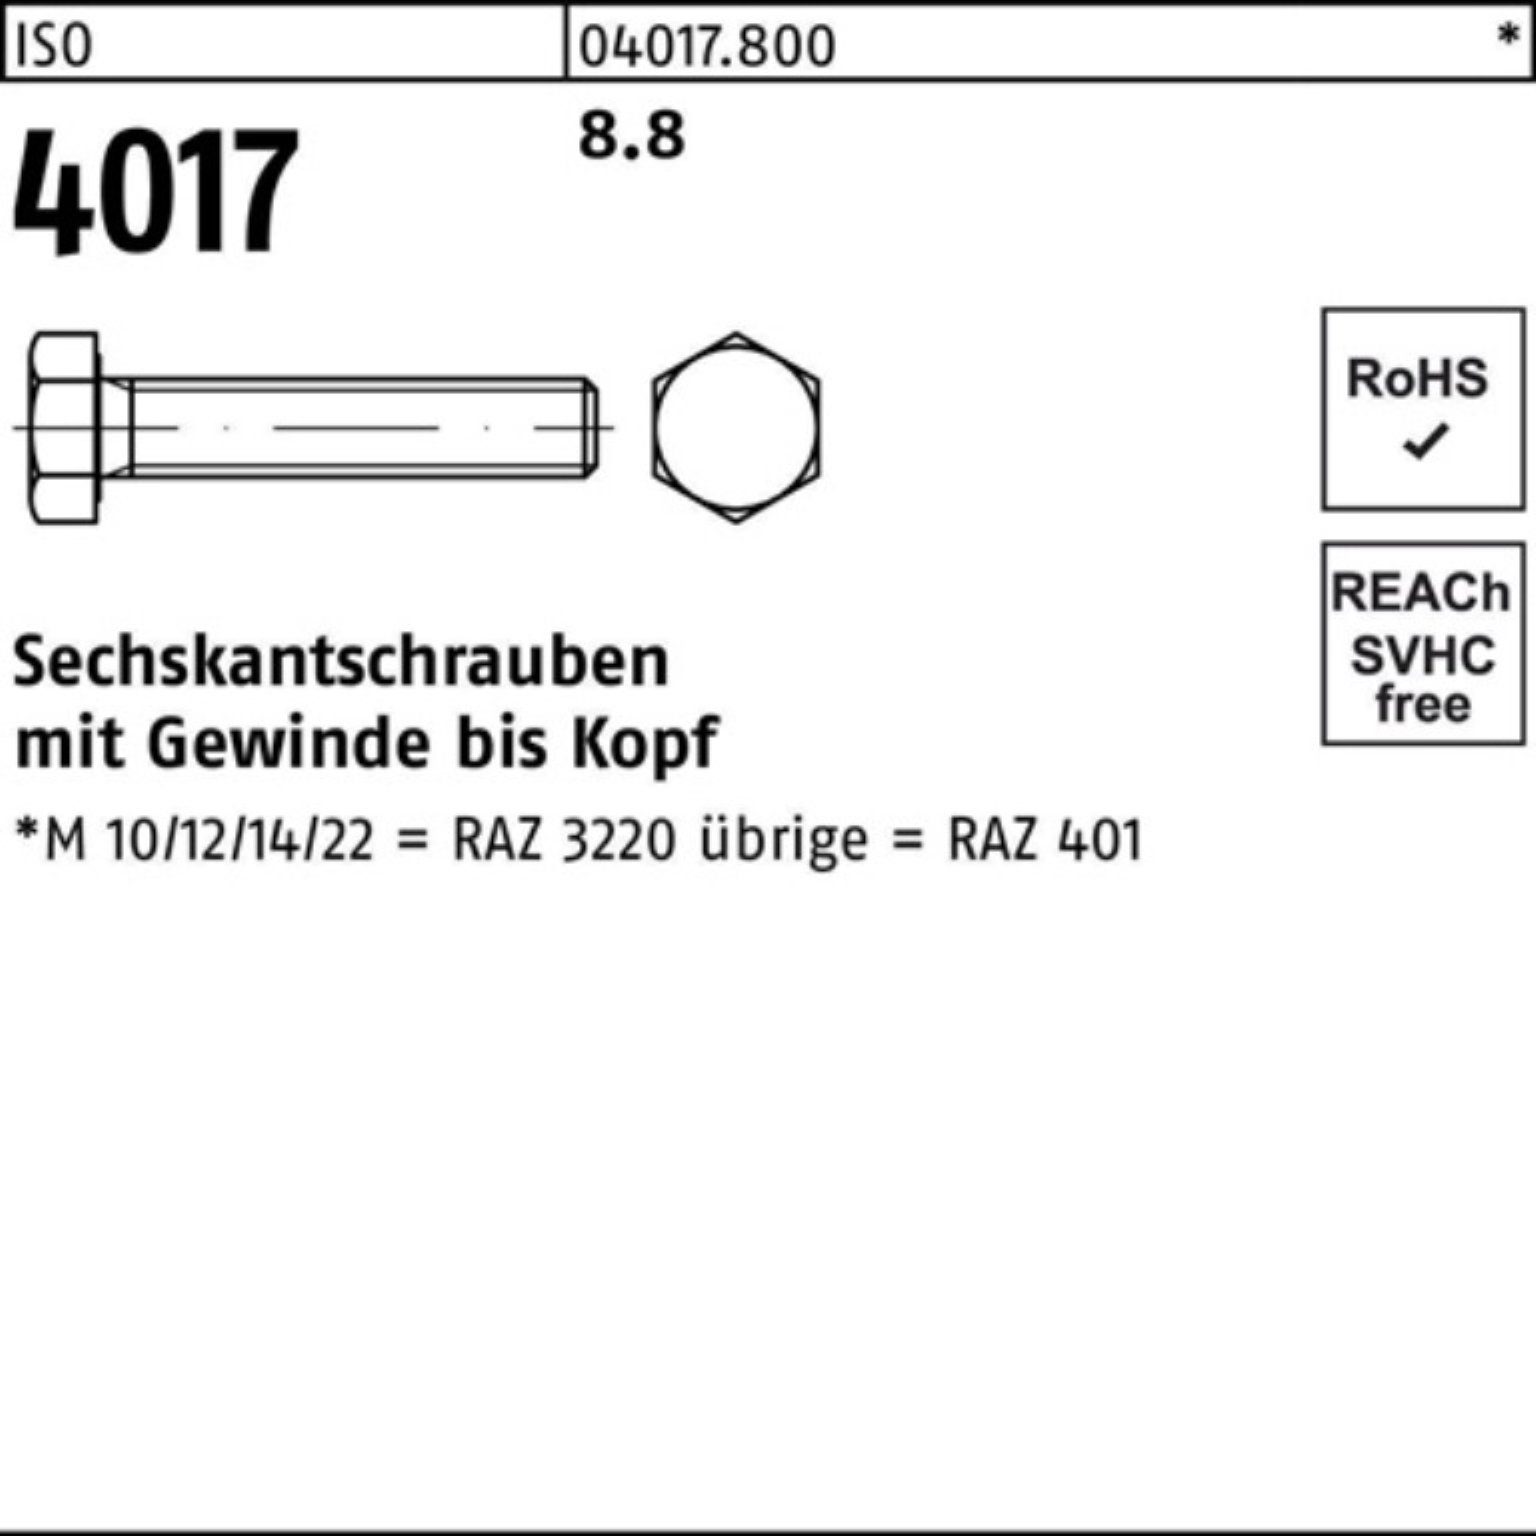 4017 Sechskantschraube ISO Bufab M5x VG 40 Sechskantschraube 200 ISO 8.8 Stück Pack 200er 100